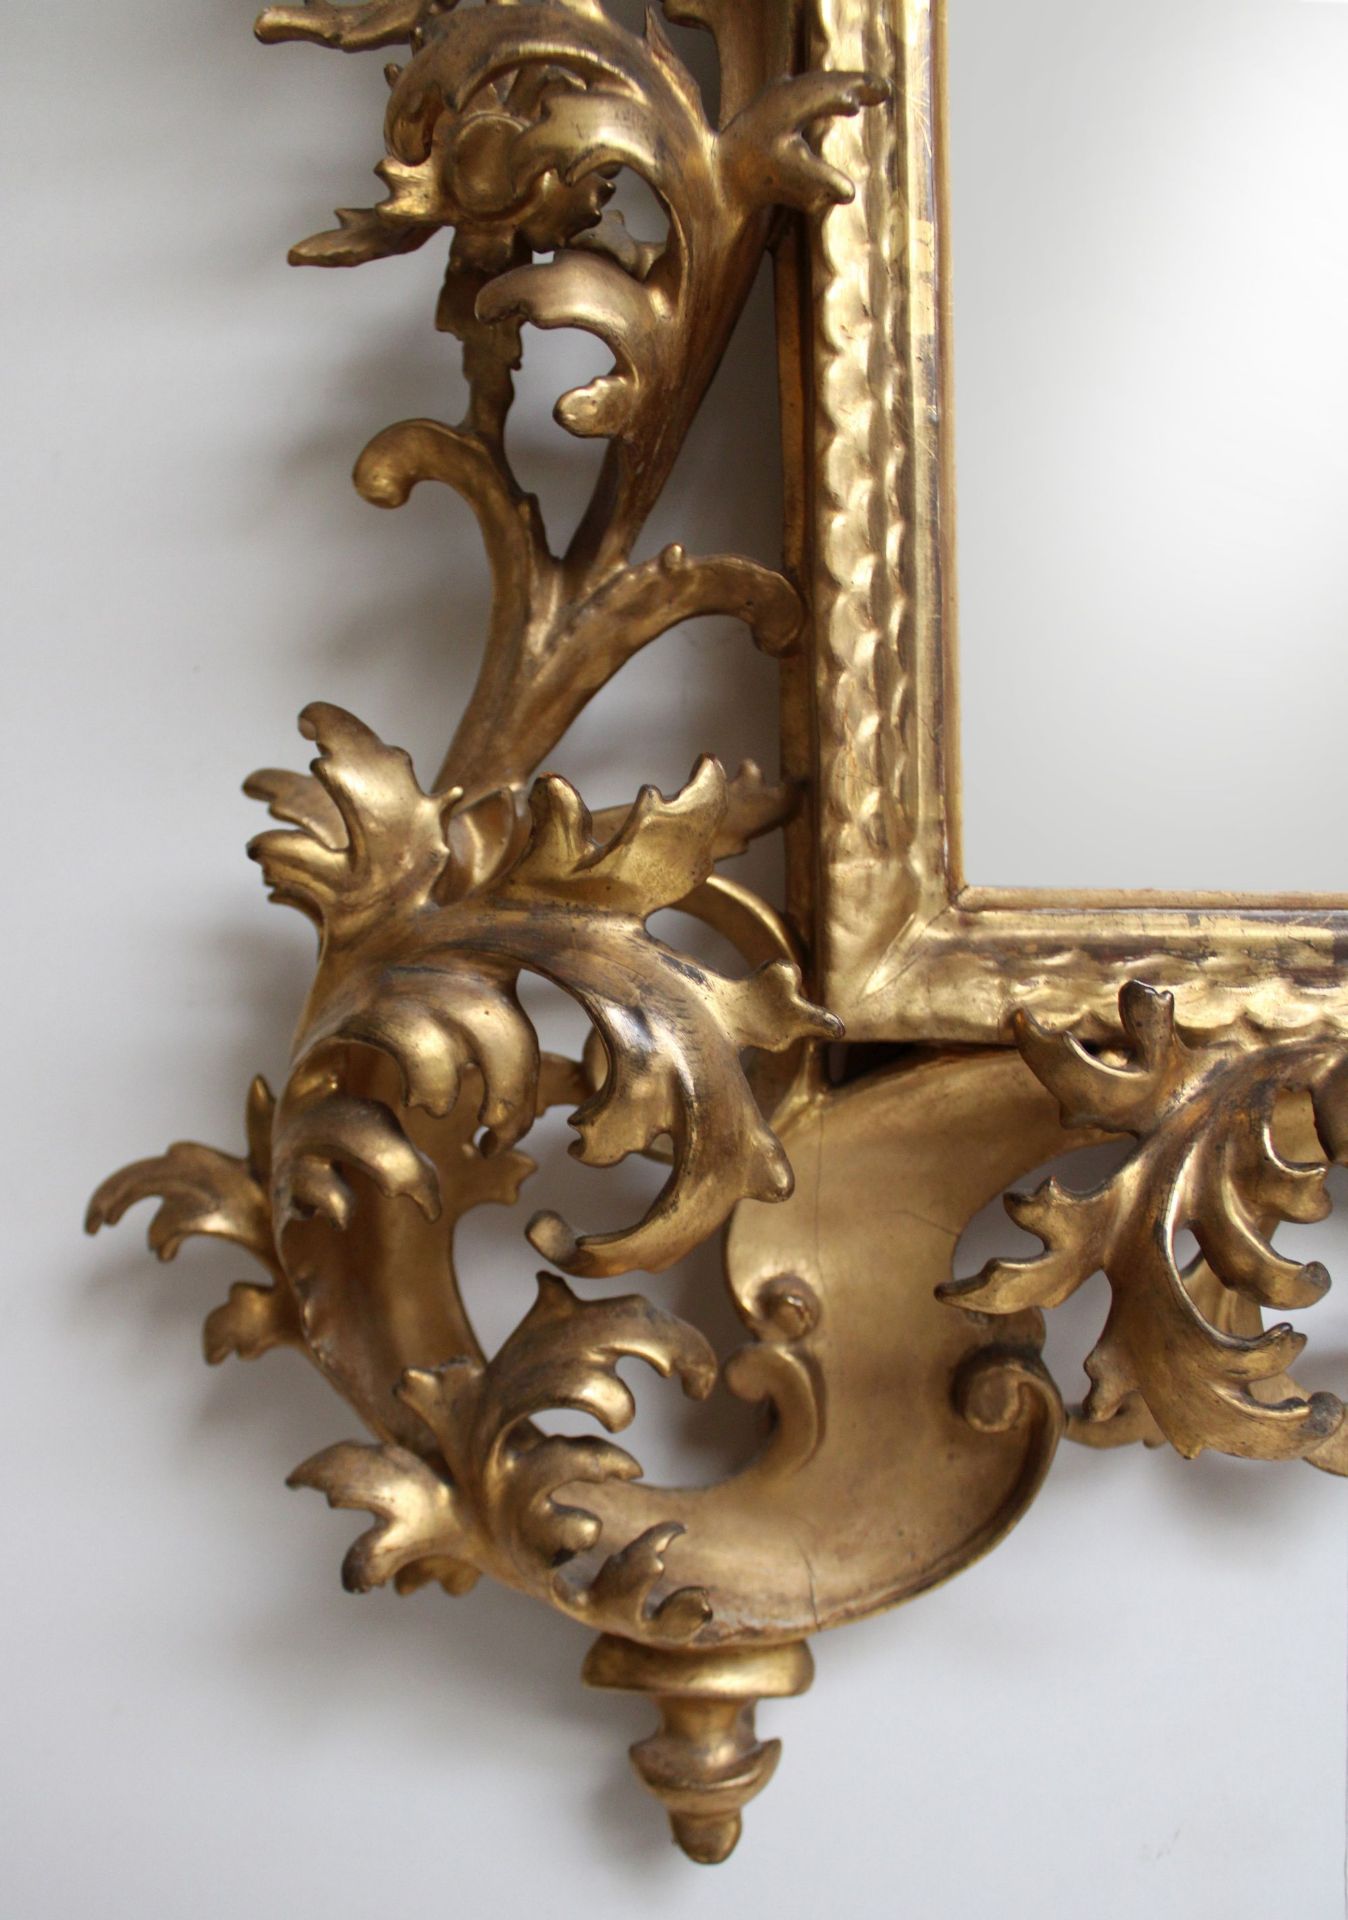 Spiegel, Louis XV, Frankreich, Mitte 18. Jh., originale Fassung und Vergoldung, Spiegelglas später, - Bild 2 aus 2